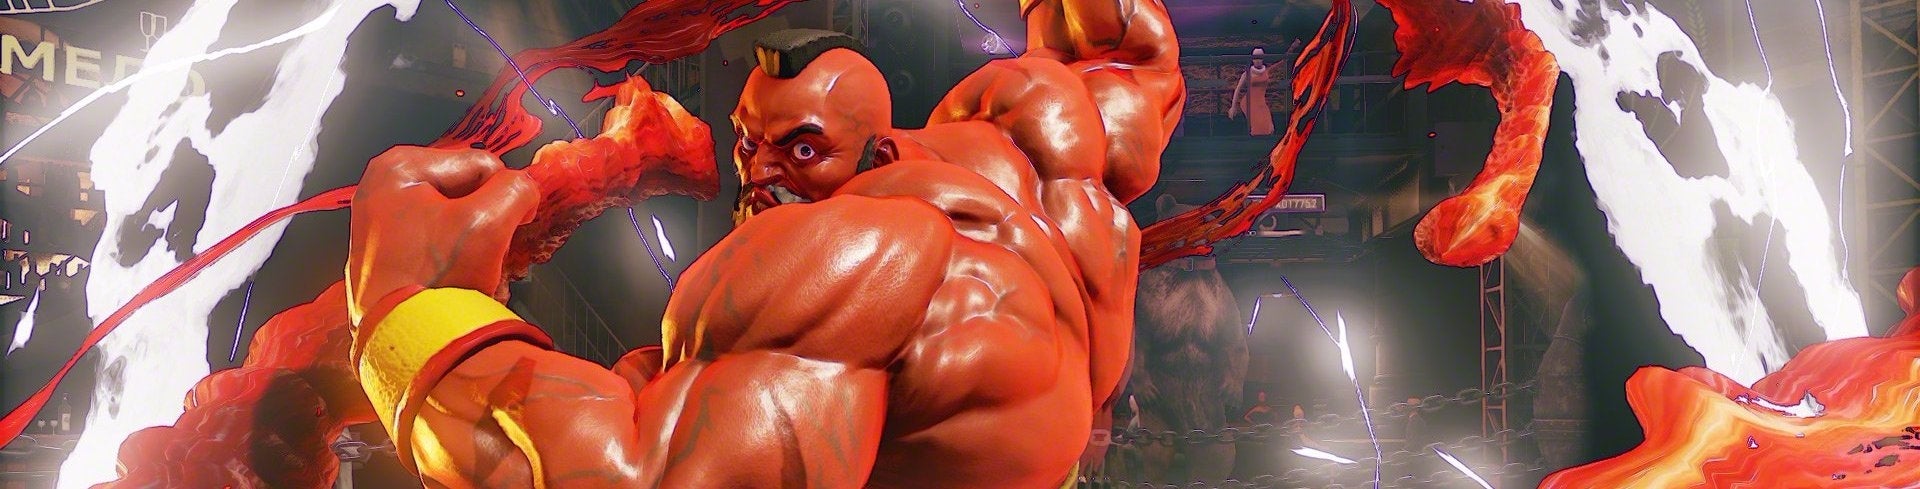 Afbeeldingen van Street Fighter 5 review - Heeft meer training nodig